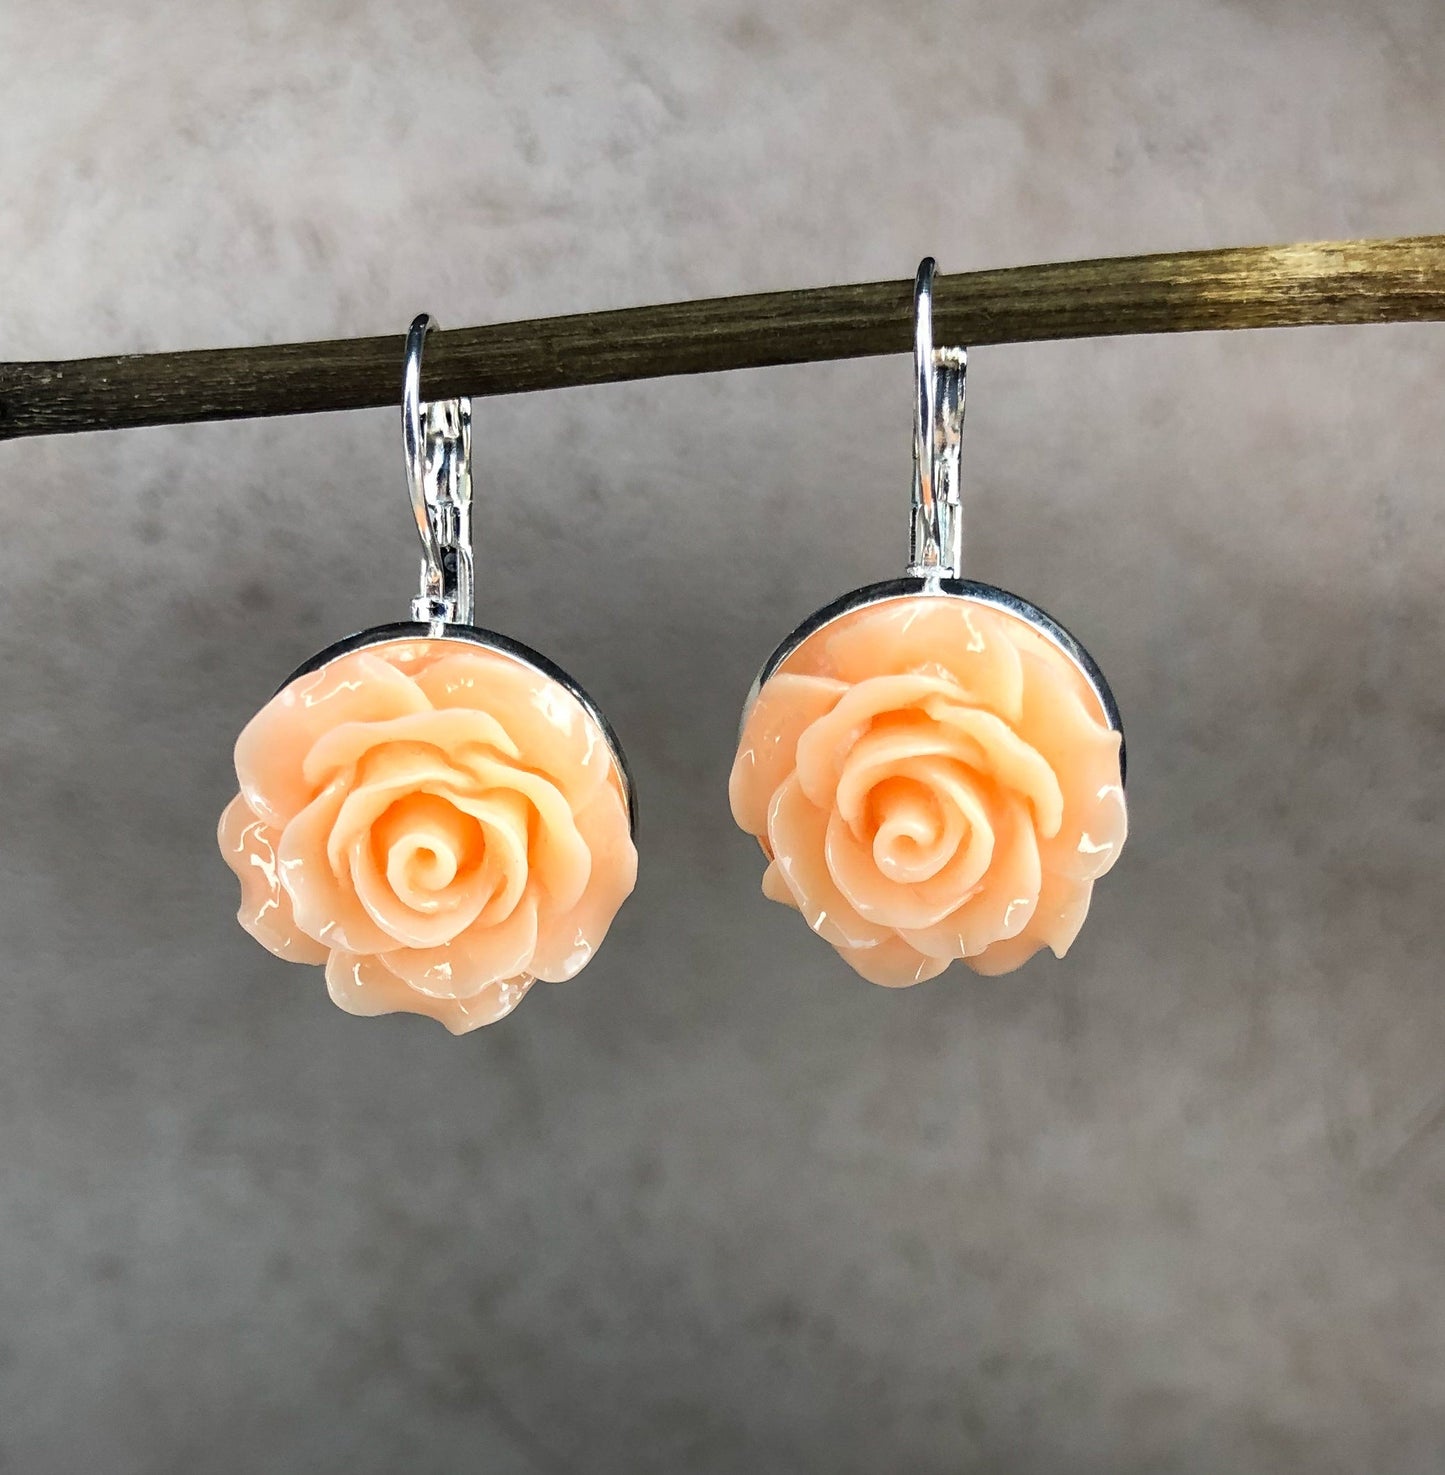 Summer roses earrings in vintage style - vinohr-80